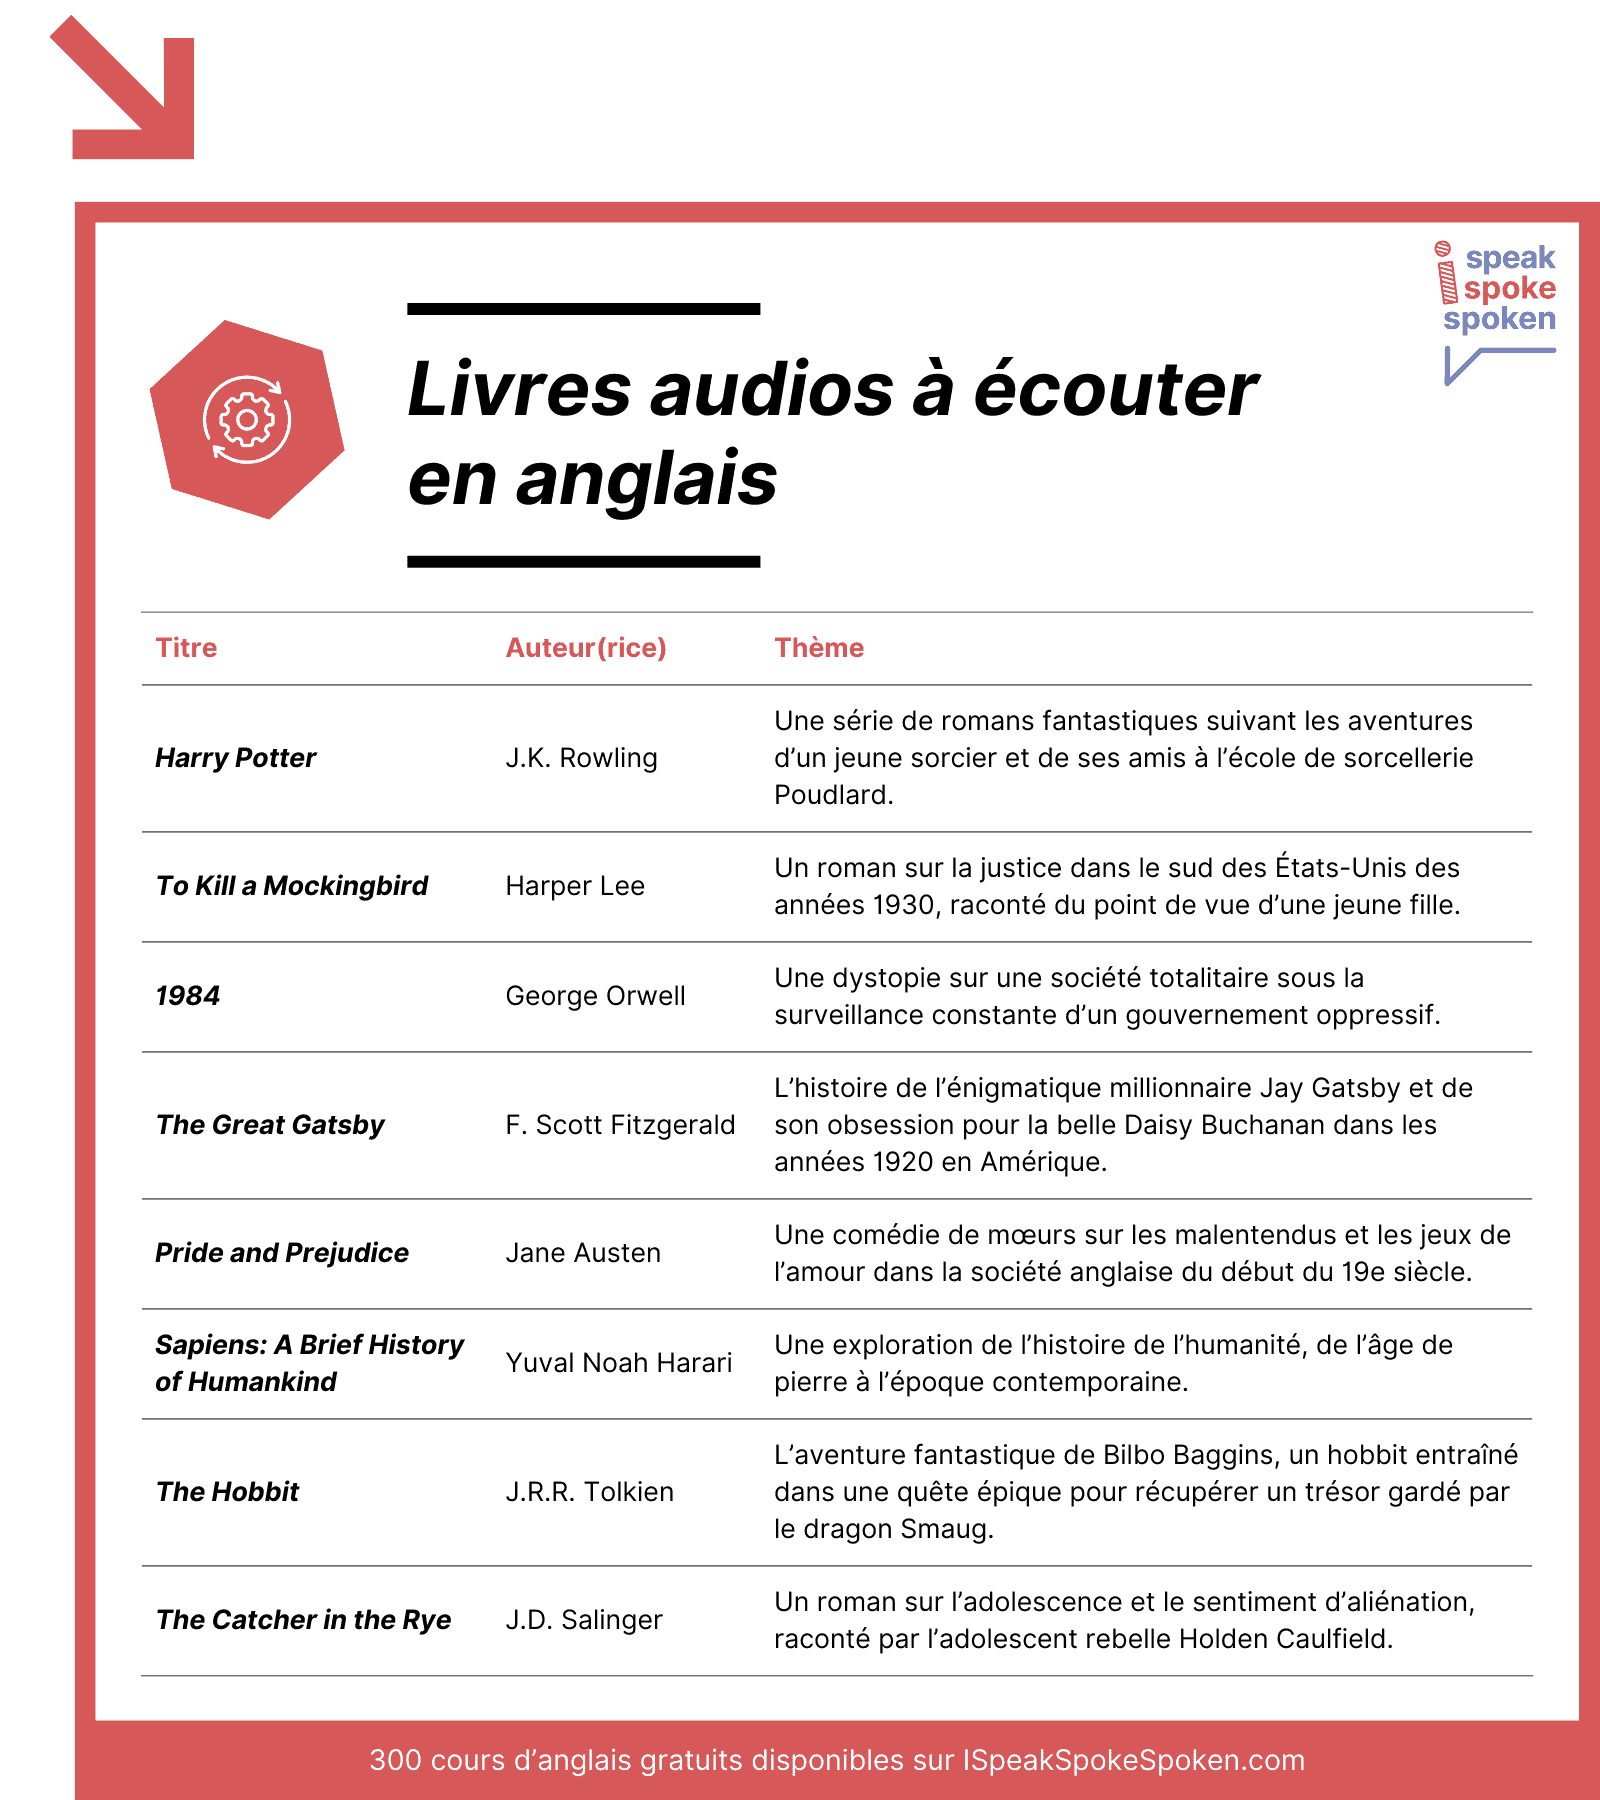 Livres audios à écouter en anglais